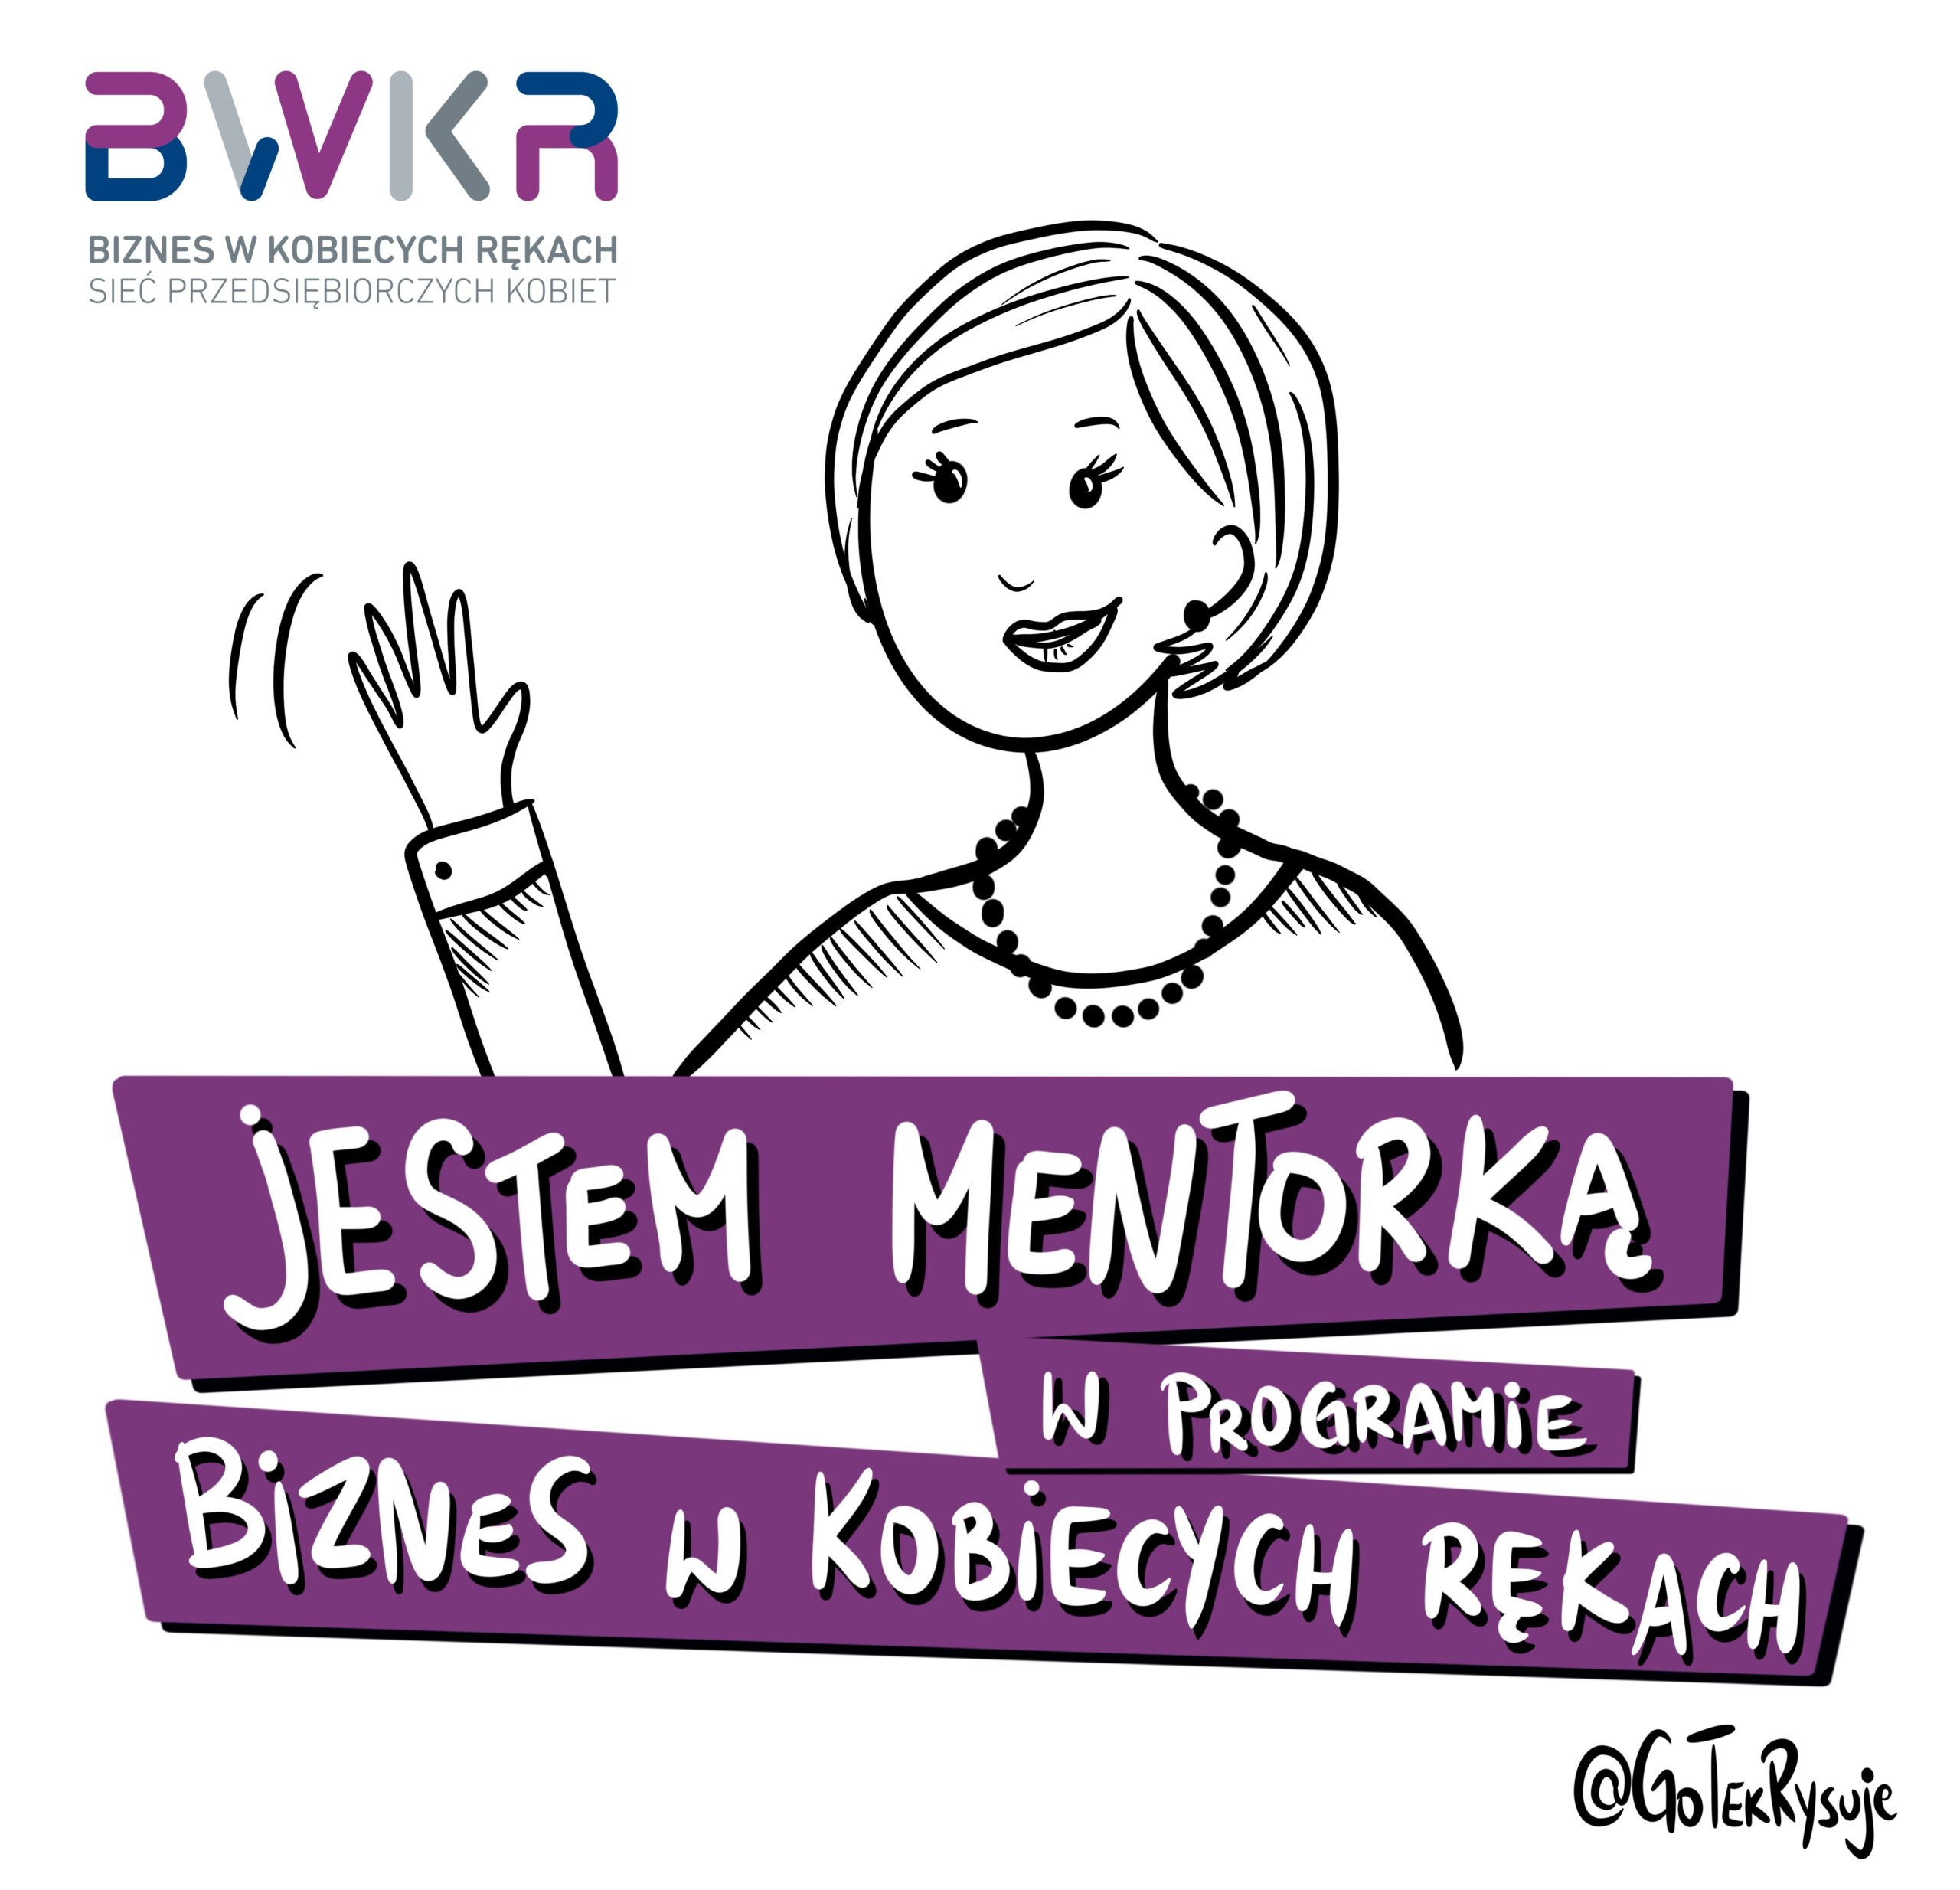 [:pl]BWKR-jestem-mentorką-obrazek (3) (1)[:]